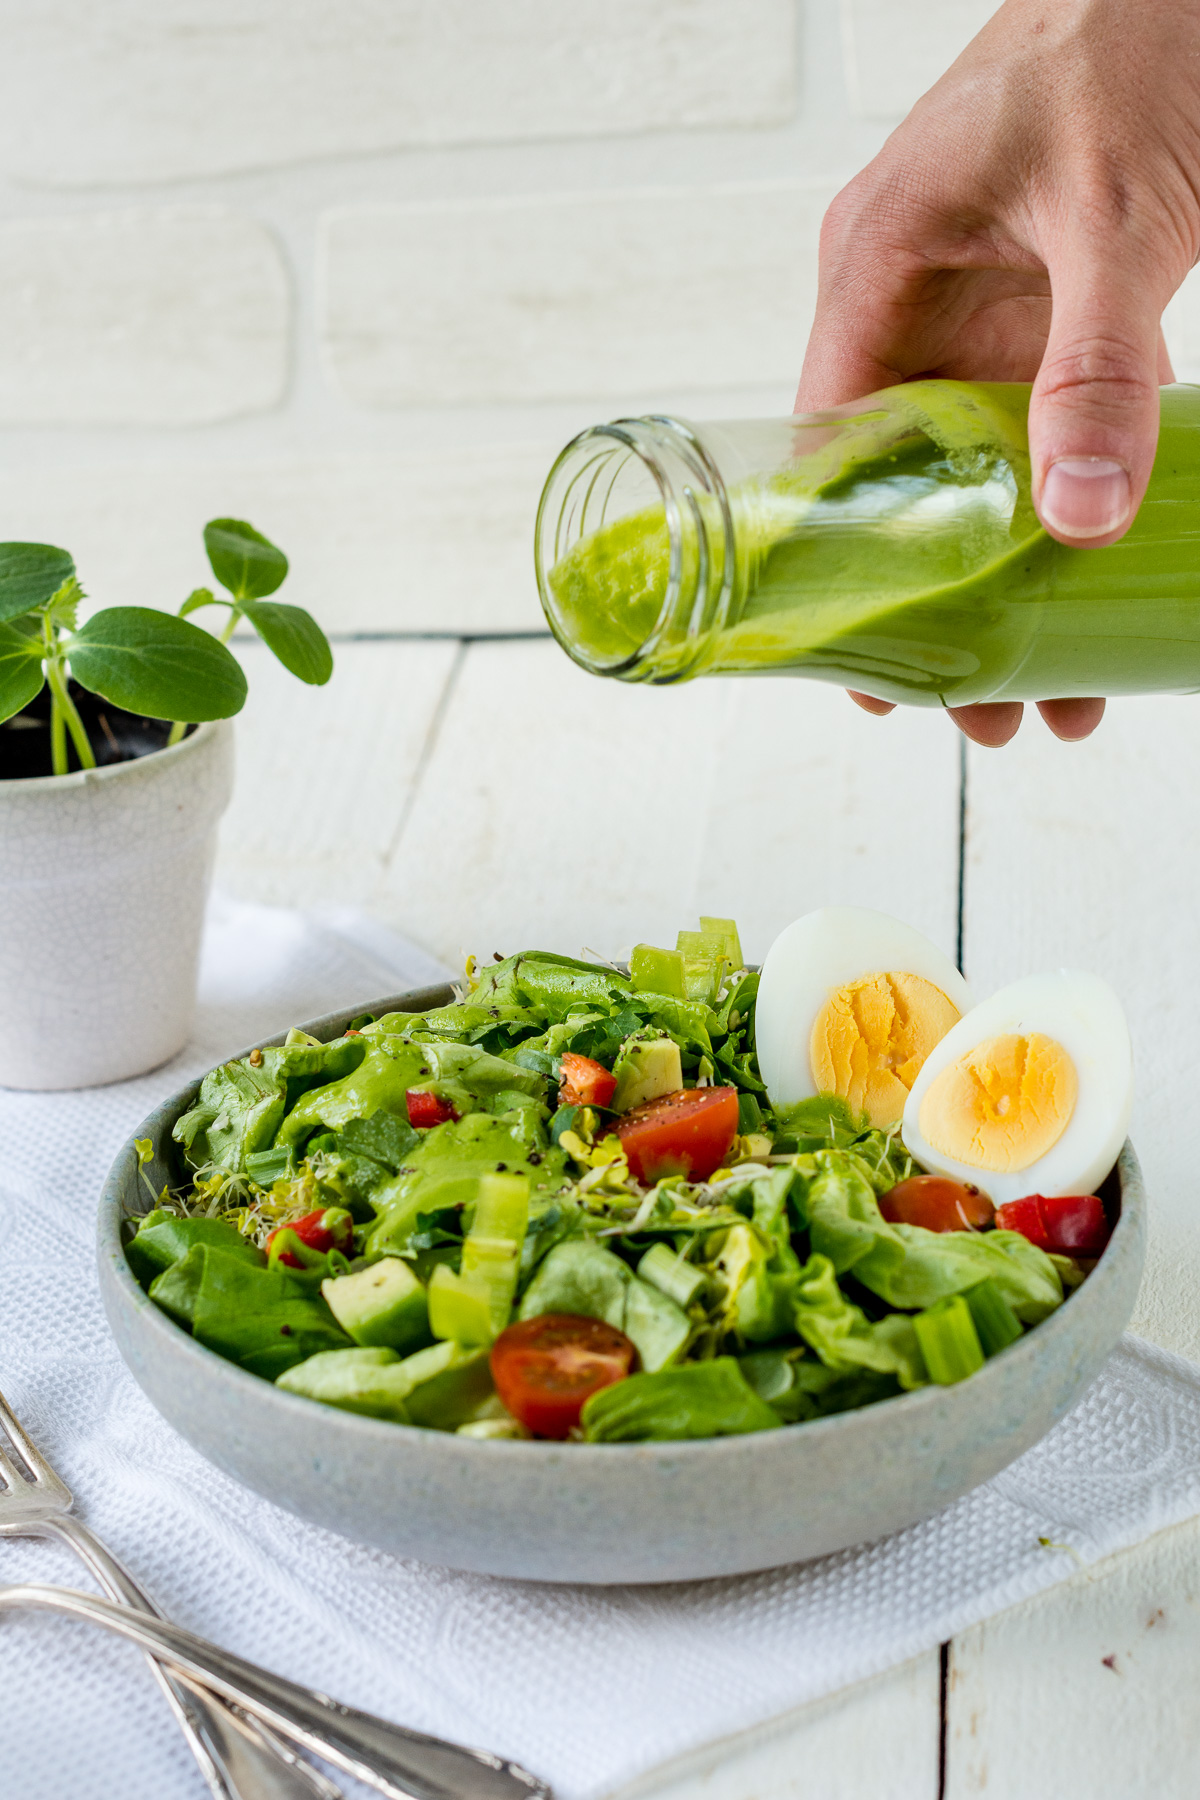 Teller mit grünem Salat, Tomaten und Eiern. Eine Hand hält eine Flasche mit grünem Salatdressing.